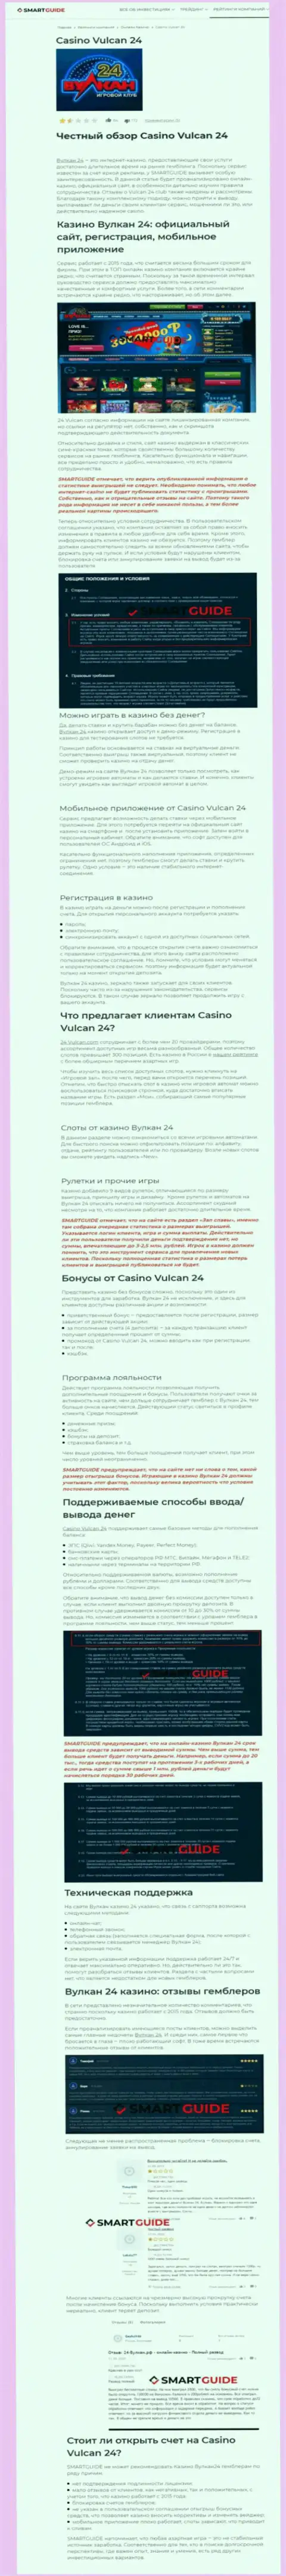 Wulkan24 - это компания, зарабатывающая на воровстве депозитов собственных клиентов (обзор)